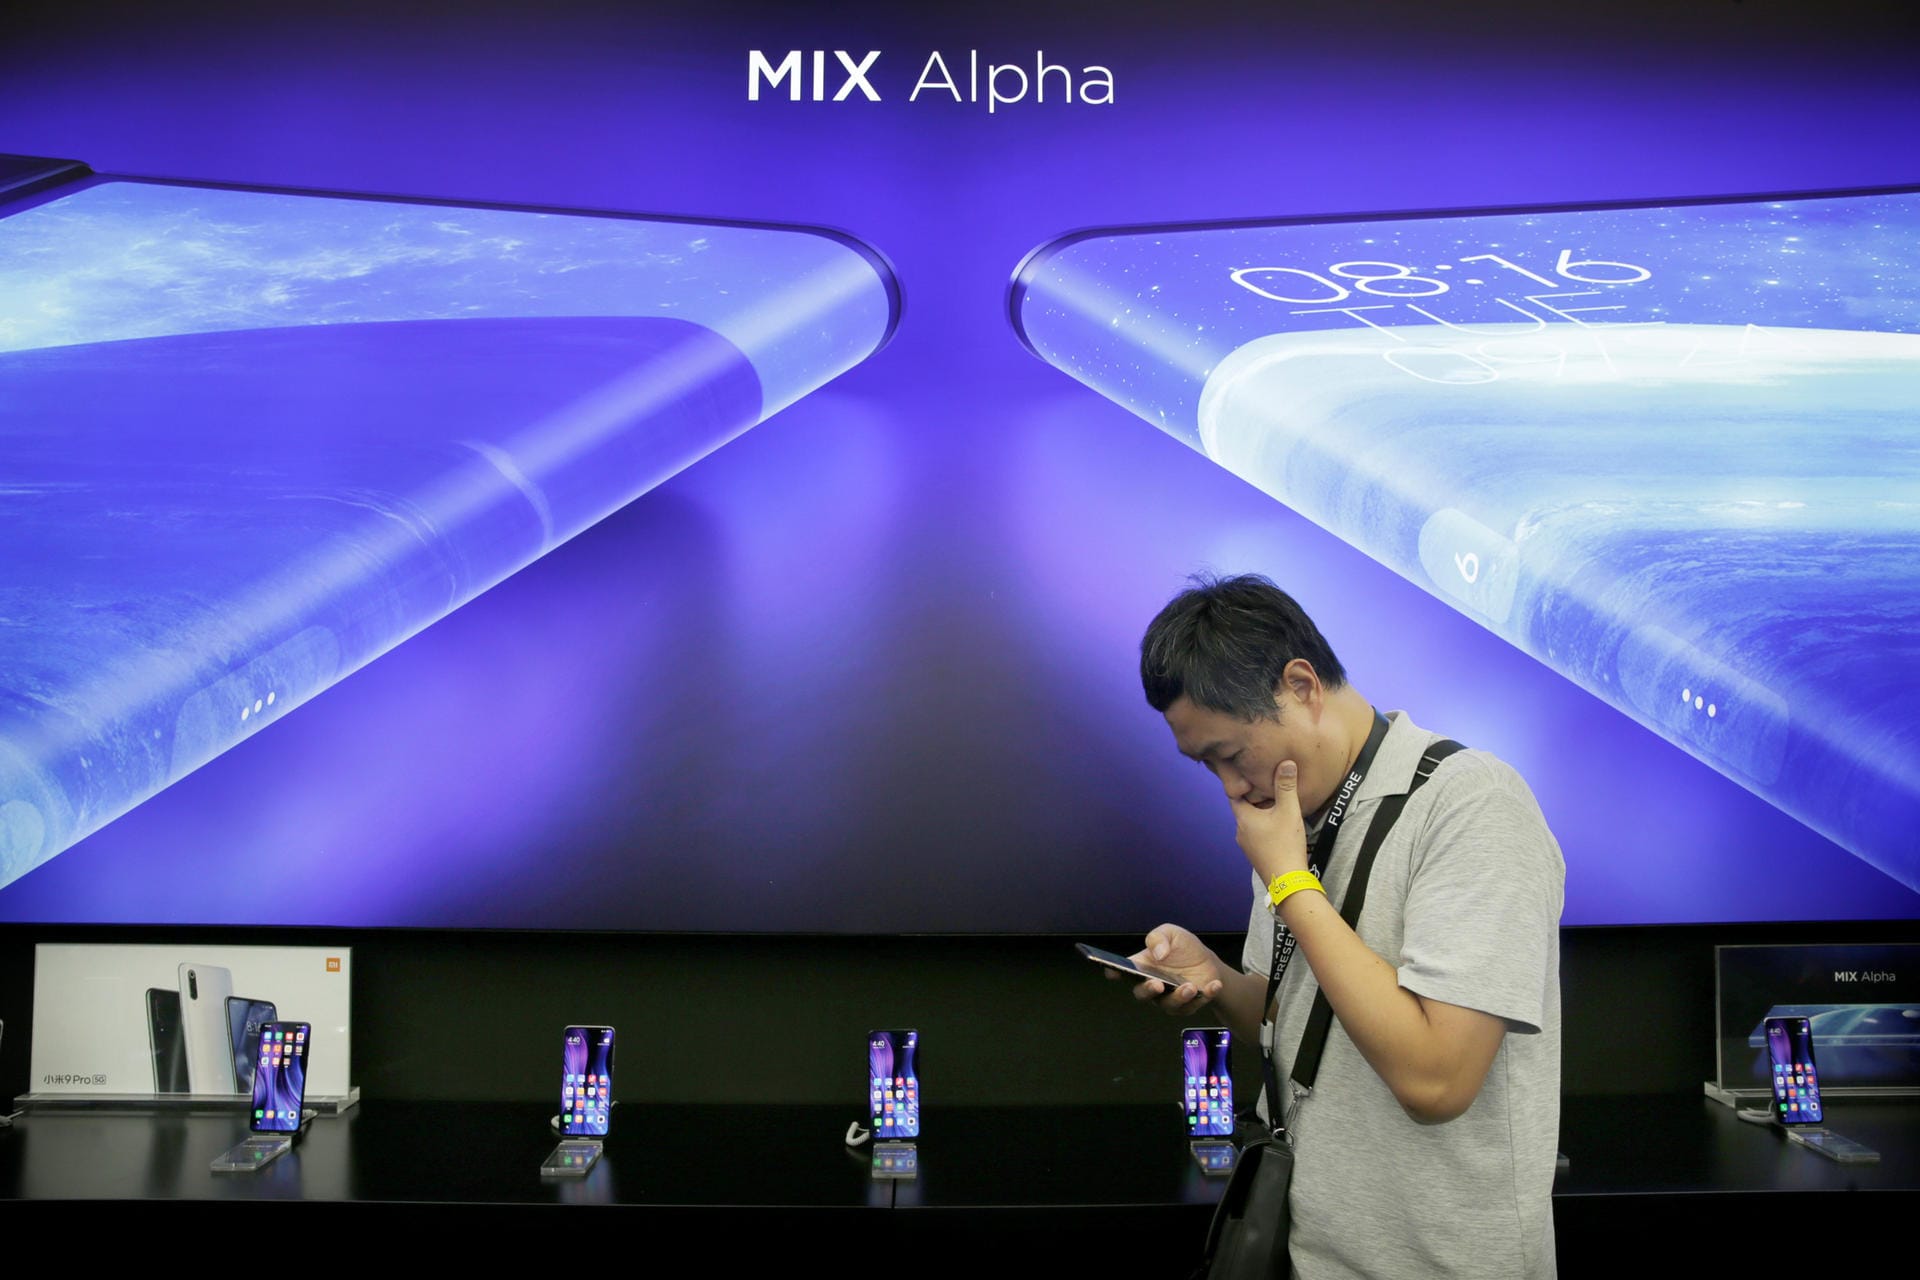 Das Mi Mix Alpha soll 19.999 Renmimbi kosten. Das sind umgerechnet etwa 2.600 Euro. Das Gerät wird laut Xiaomi nur in kleiner Stückserie angefertigt. und soll ab Dezember in China erscheinen. Ob das Gerät nach Deutschland kommt, steht bisher nicht fest.